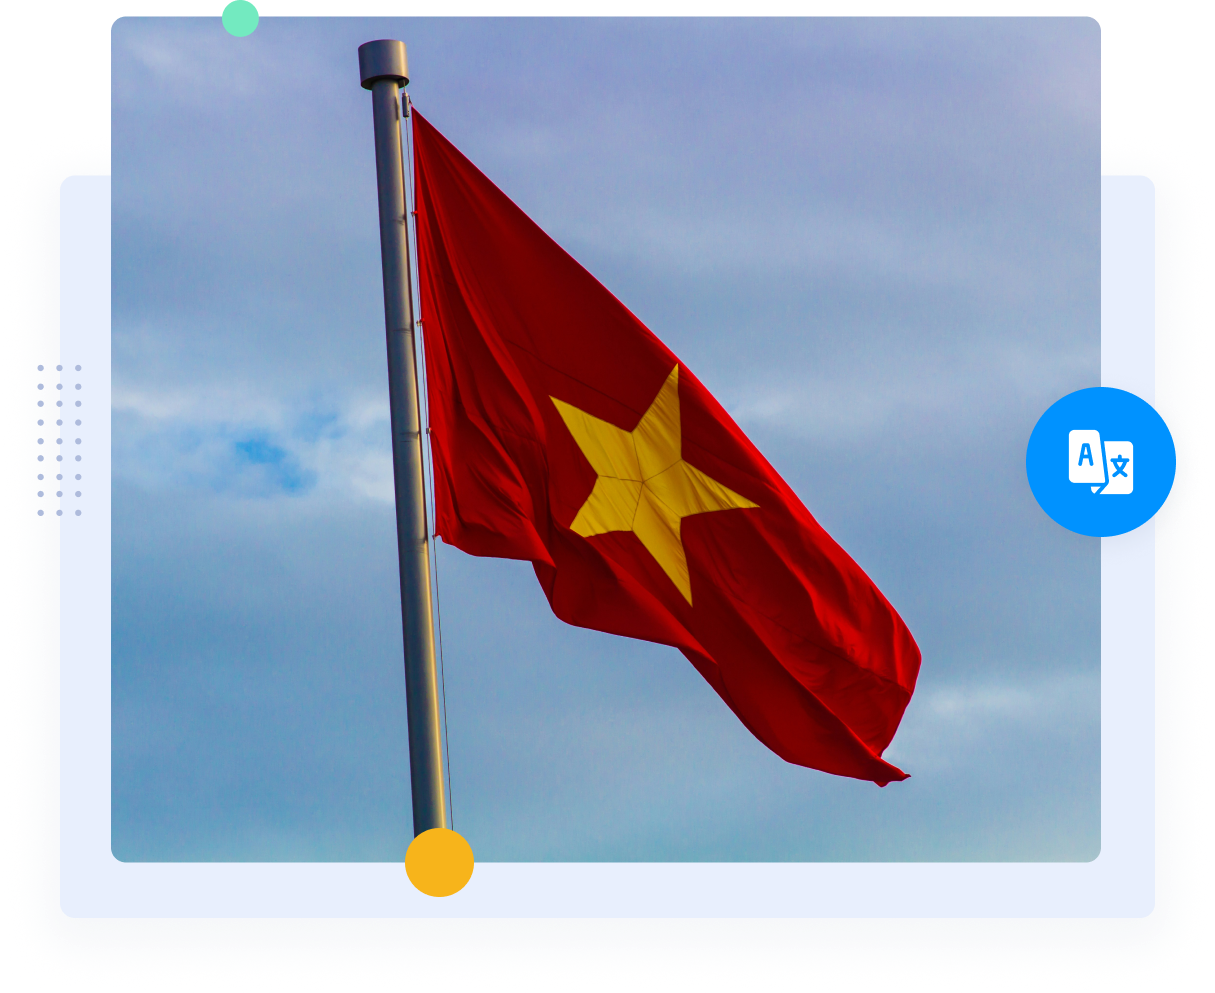 Le drapeau rouge du Viêt Nam avec l'étoile jaune représentant les traductions vietnamien-anglais.